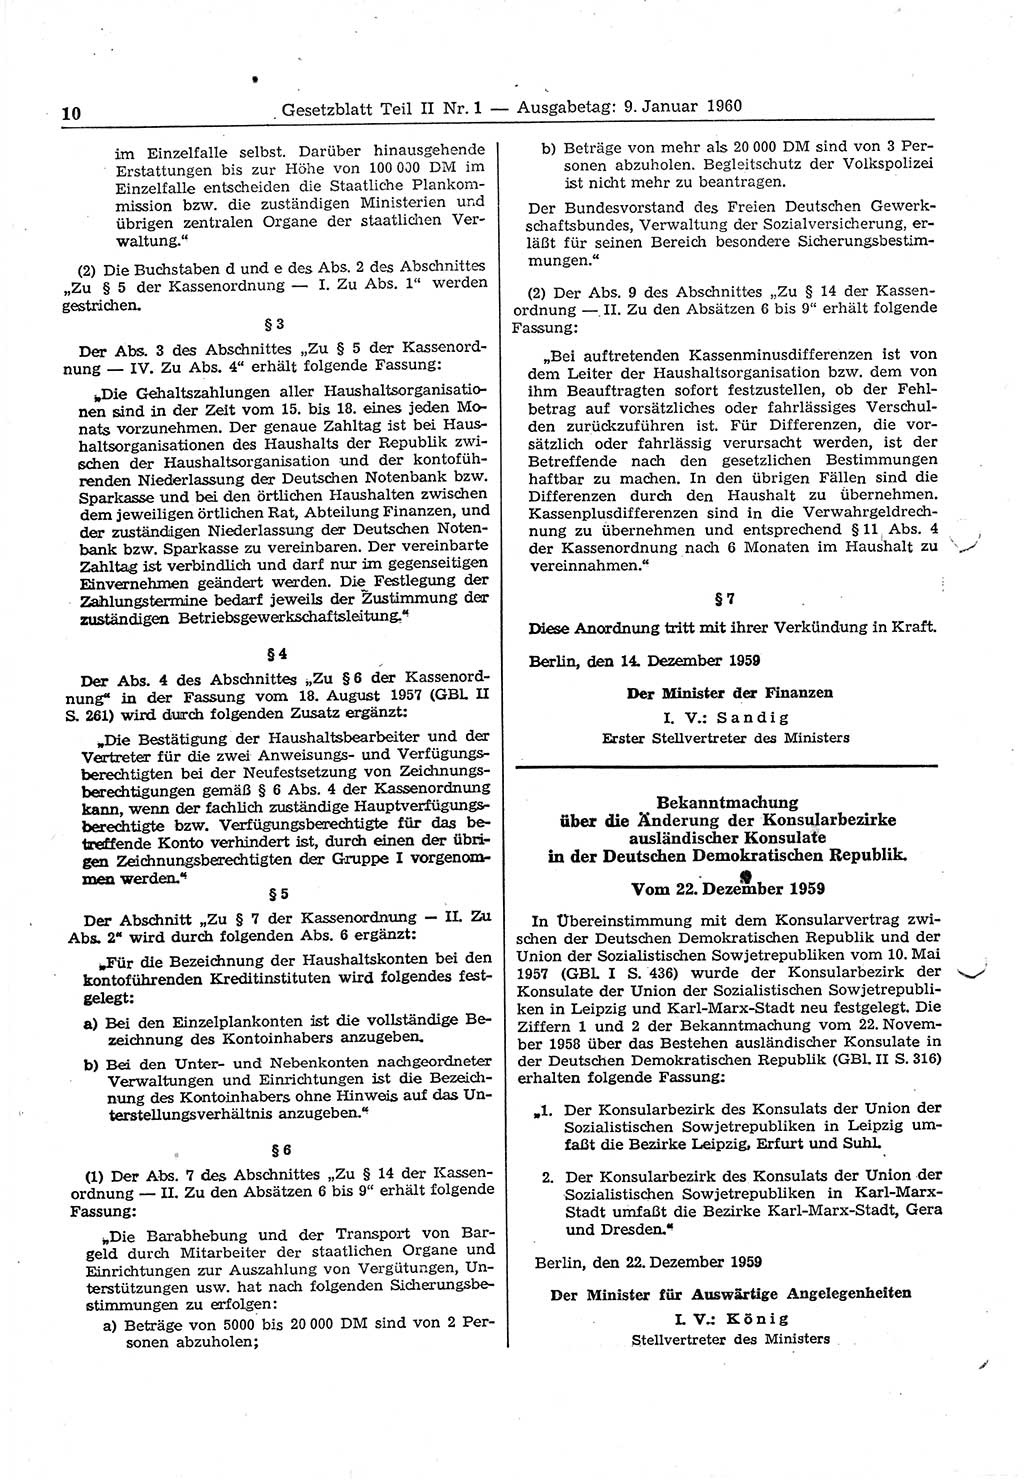 Gesetzblatt (GBl.) der Deutschen Demokratischen Republik (DDR) Teil ⅠⅠ 1960, Seite 10 (GBl. DDR ⅠⅠ 1960, S. 10)